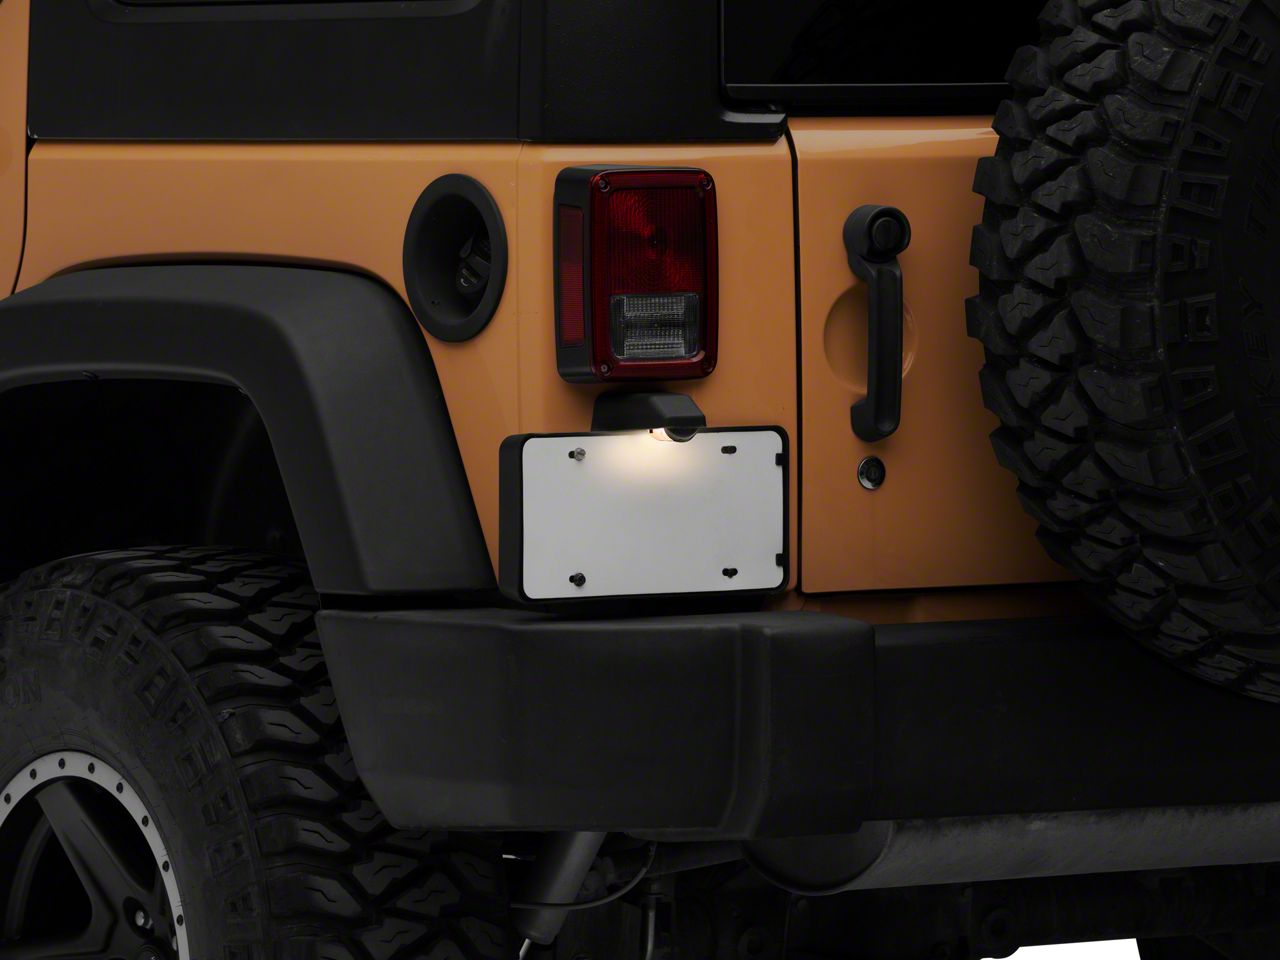 Rear License Plate Mounting Holder Bracket /&Light For 2007-2017 Jeep Wrangler JK